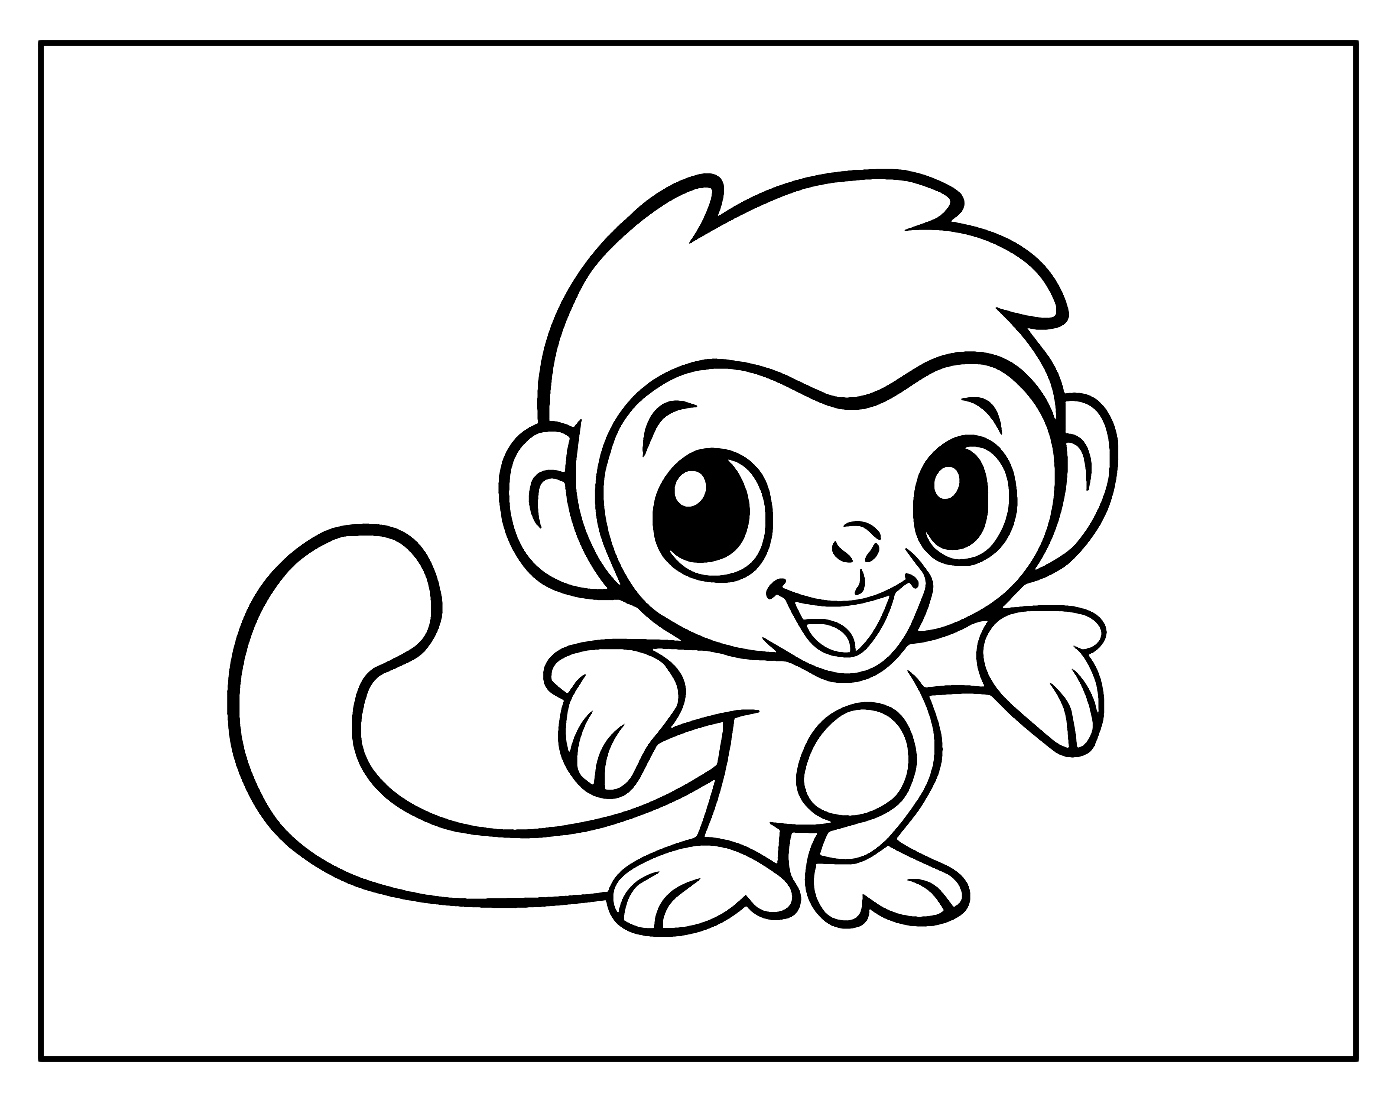 Cinco macacos pequenos, dos desenhos para crianças, Compilação